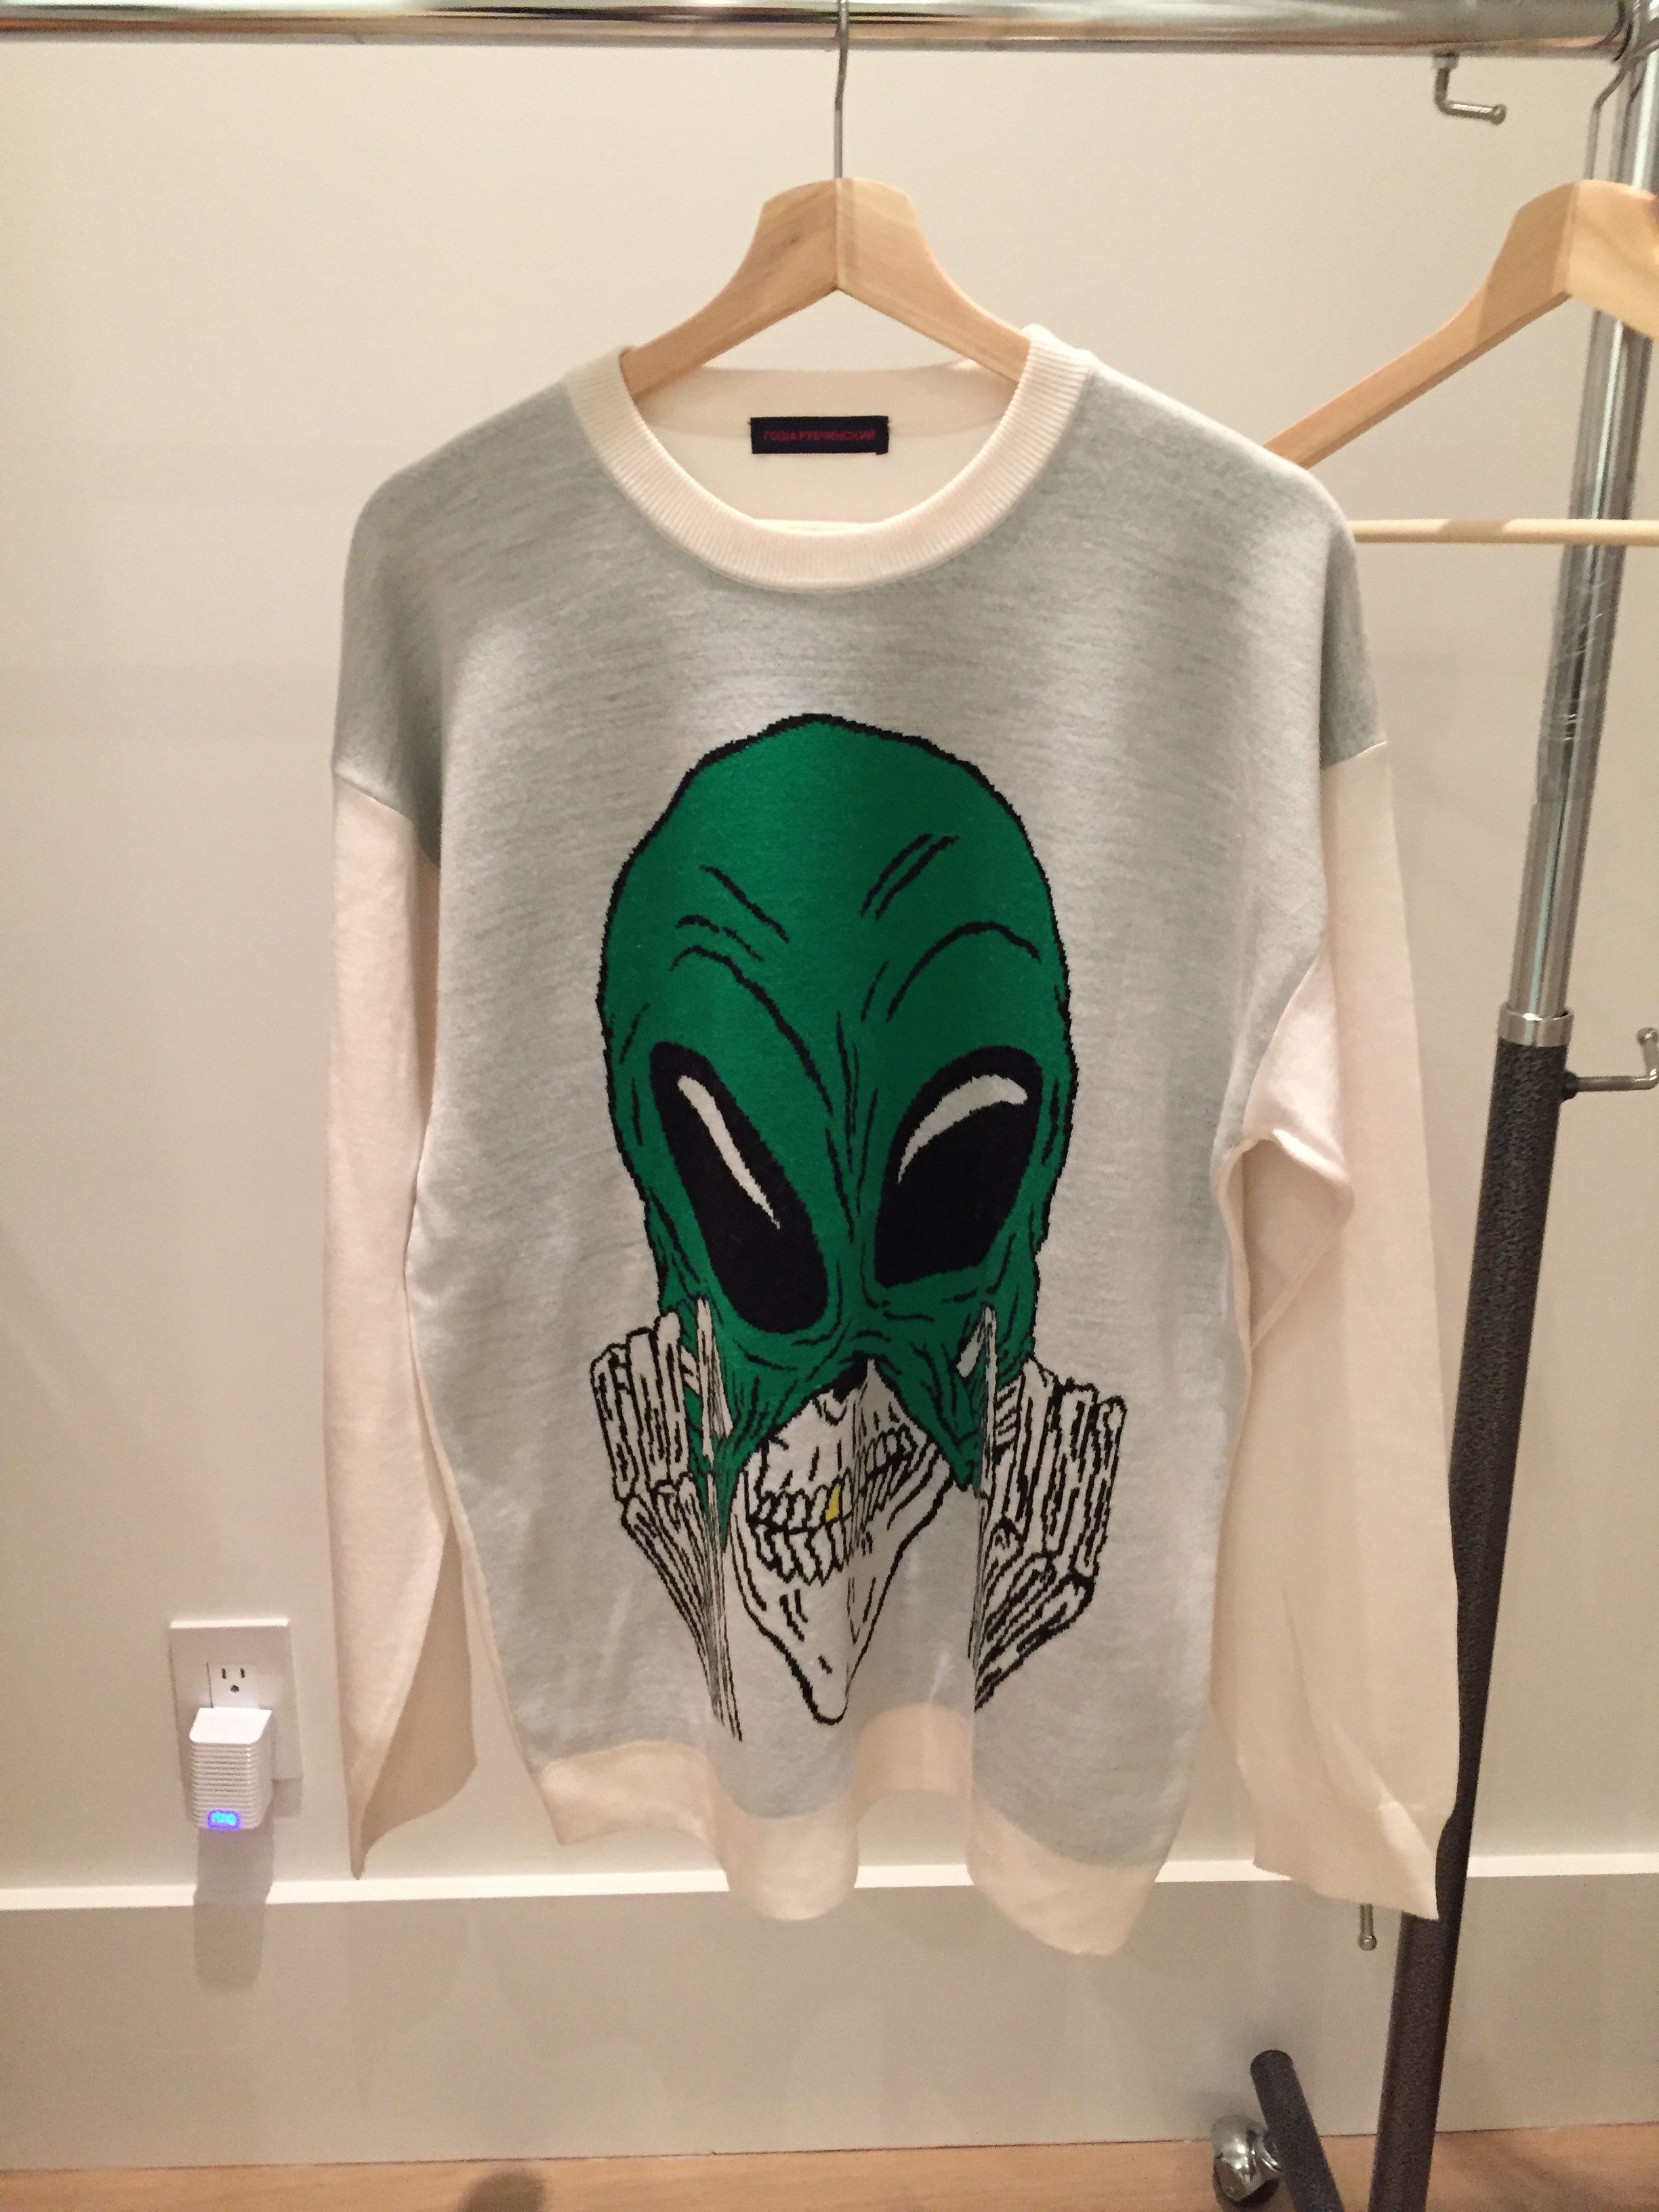 Gosha Rubchinskiy Gosha Rubchinskiy Alien Intarsia Sweater | Grailed